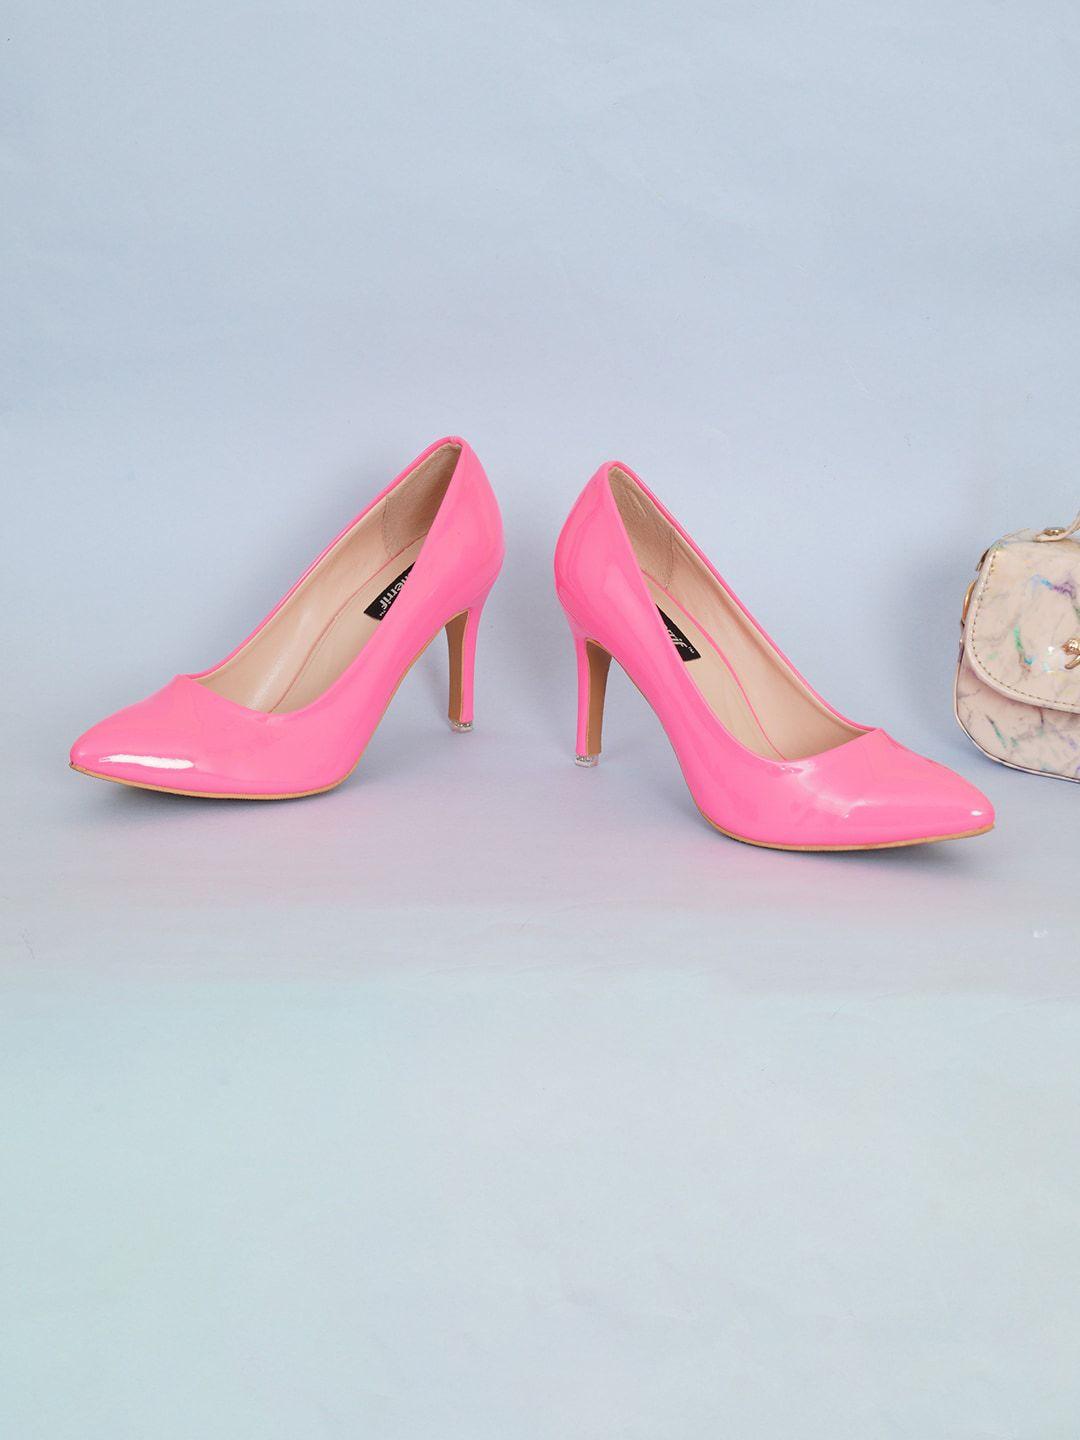 sherrif shoes pink party stiletto pumps